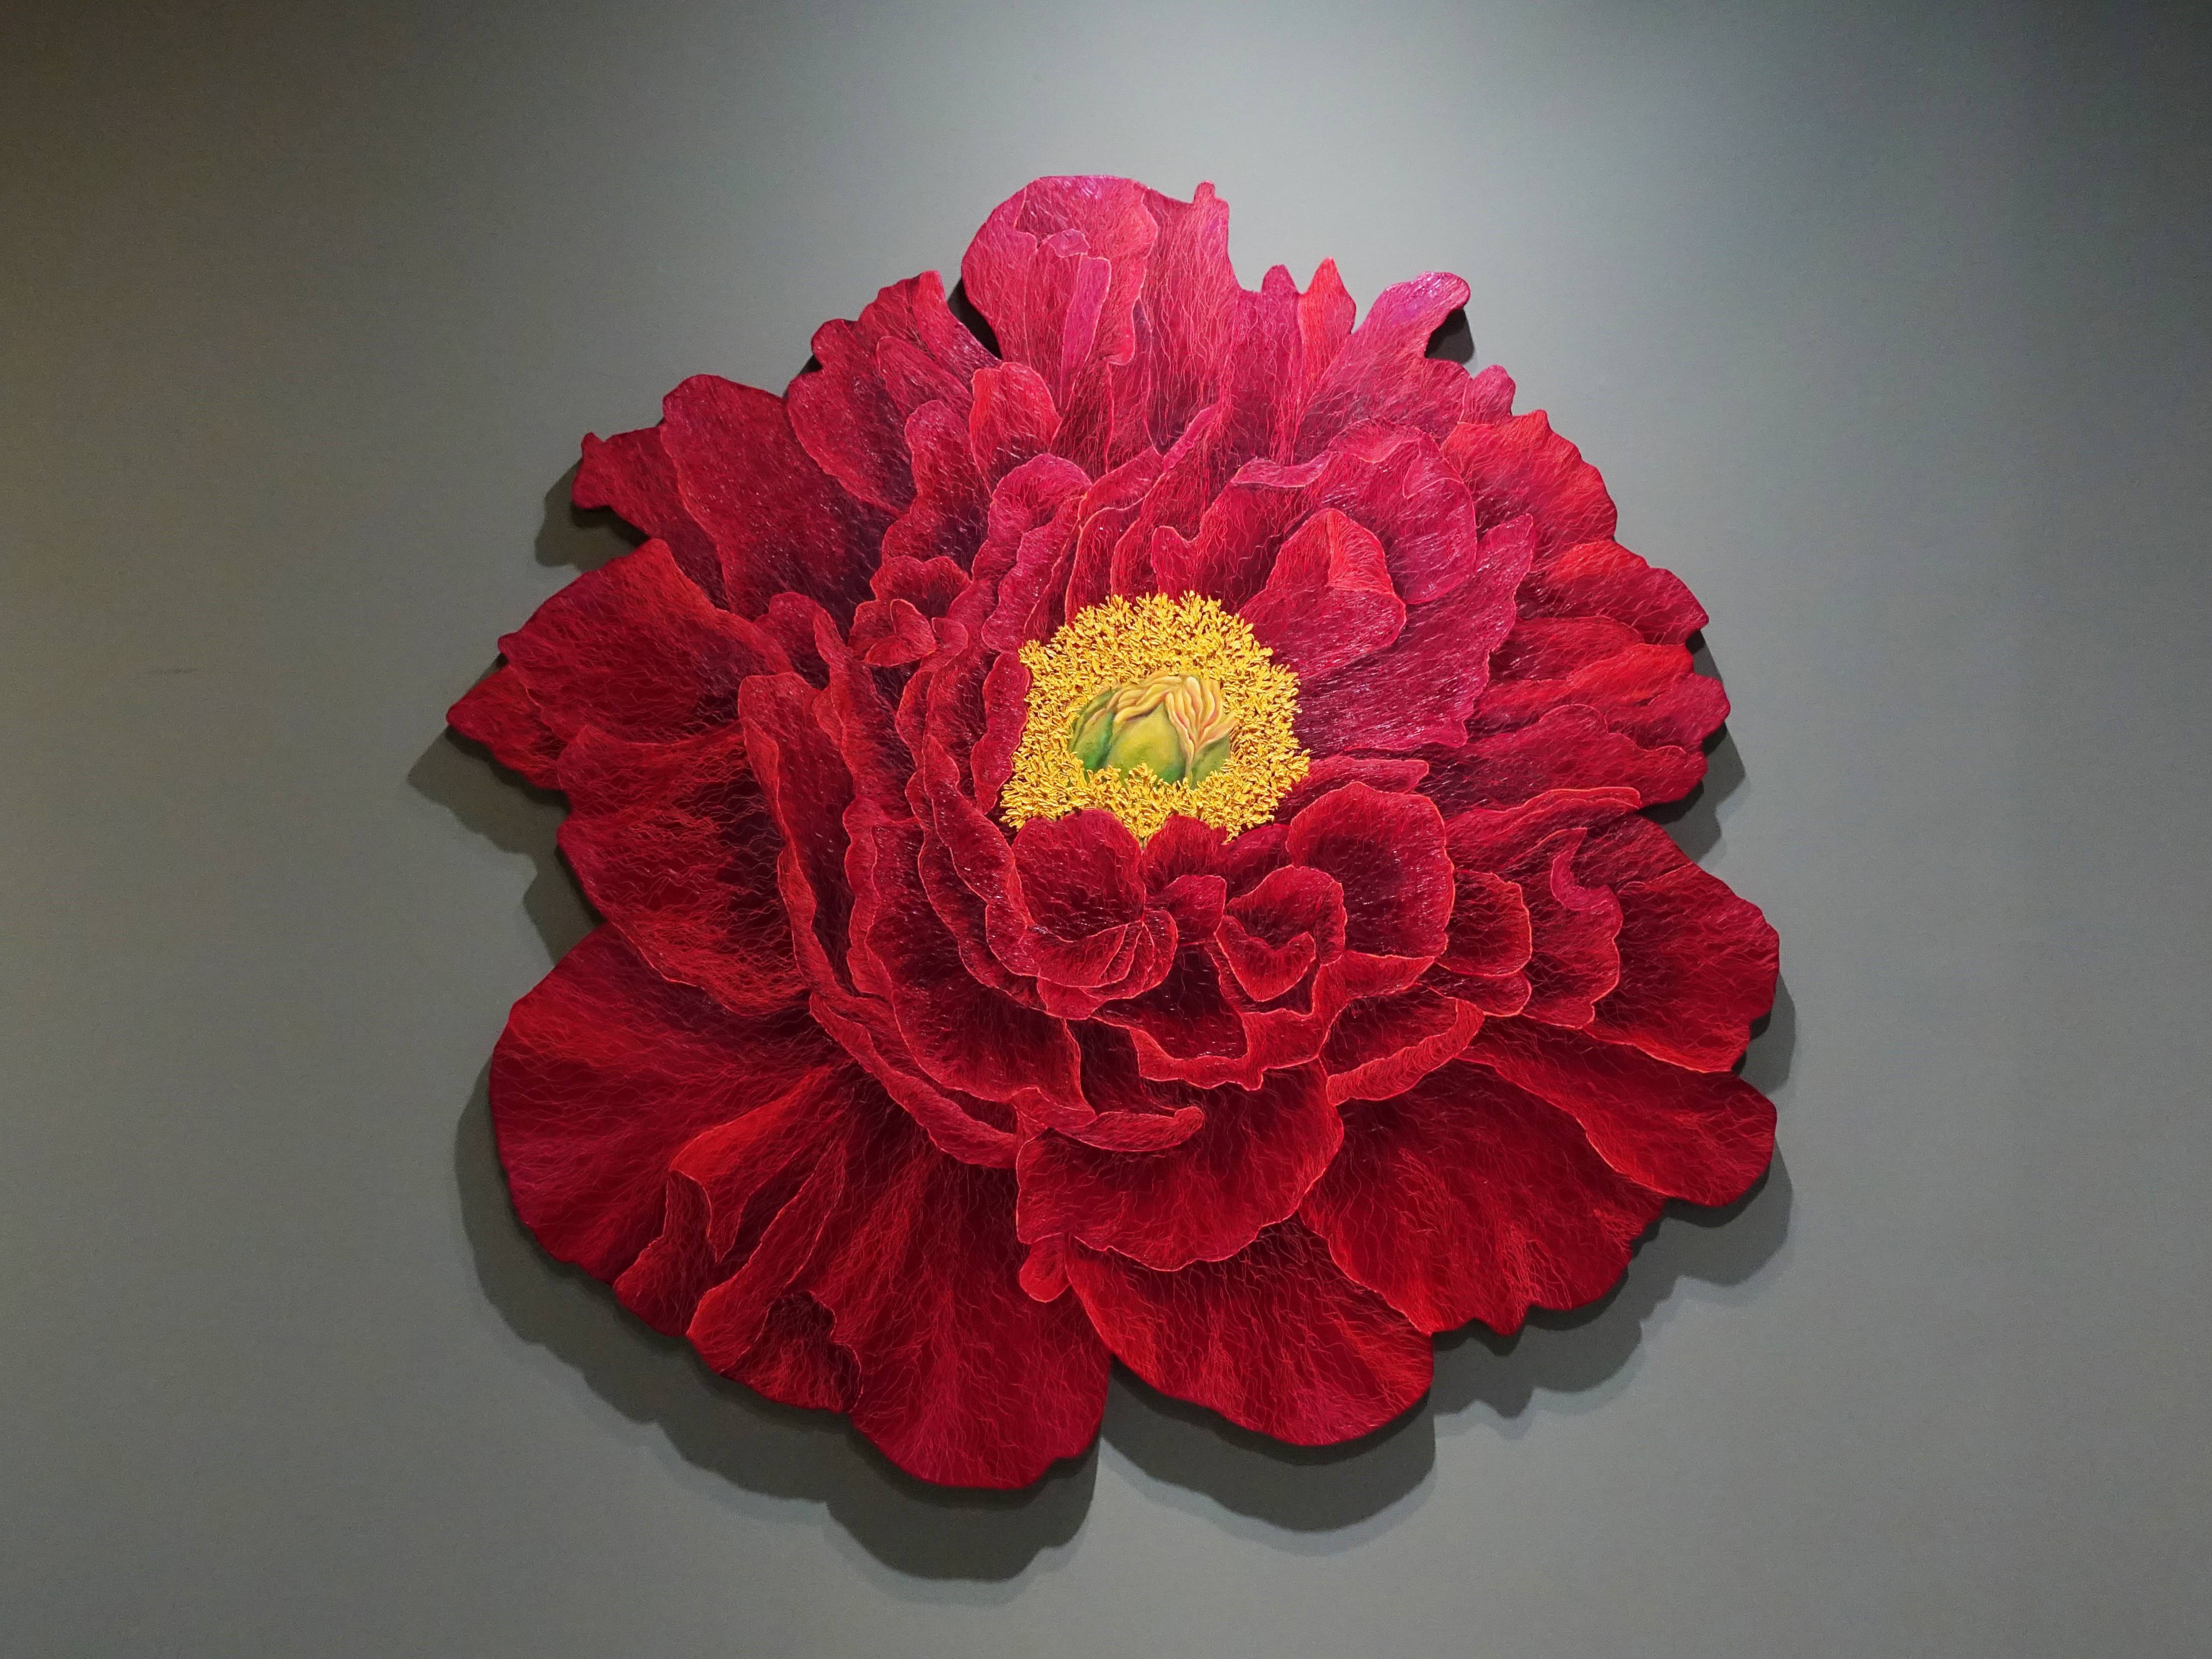 鄭麗雲，《牡丹IV》，182 x 180 cm，油彩、蔴布，2019。